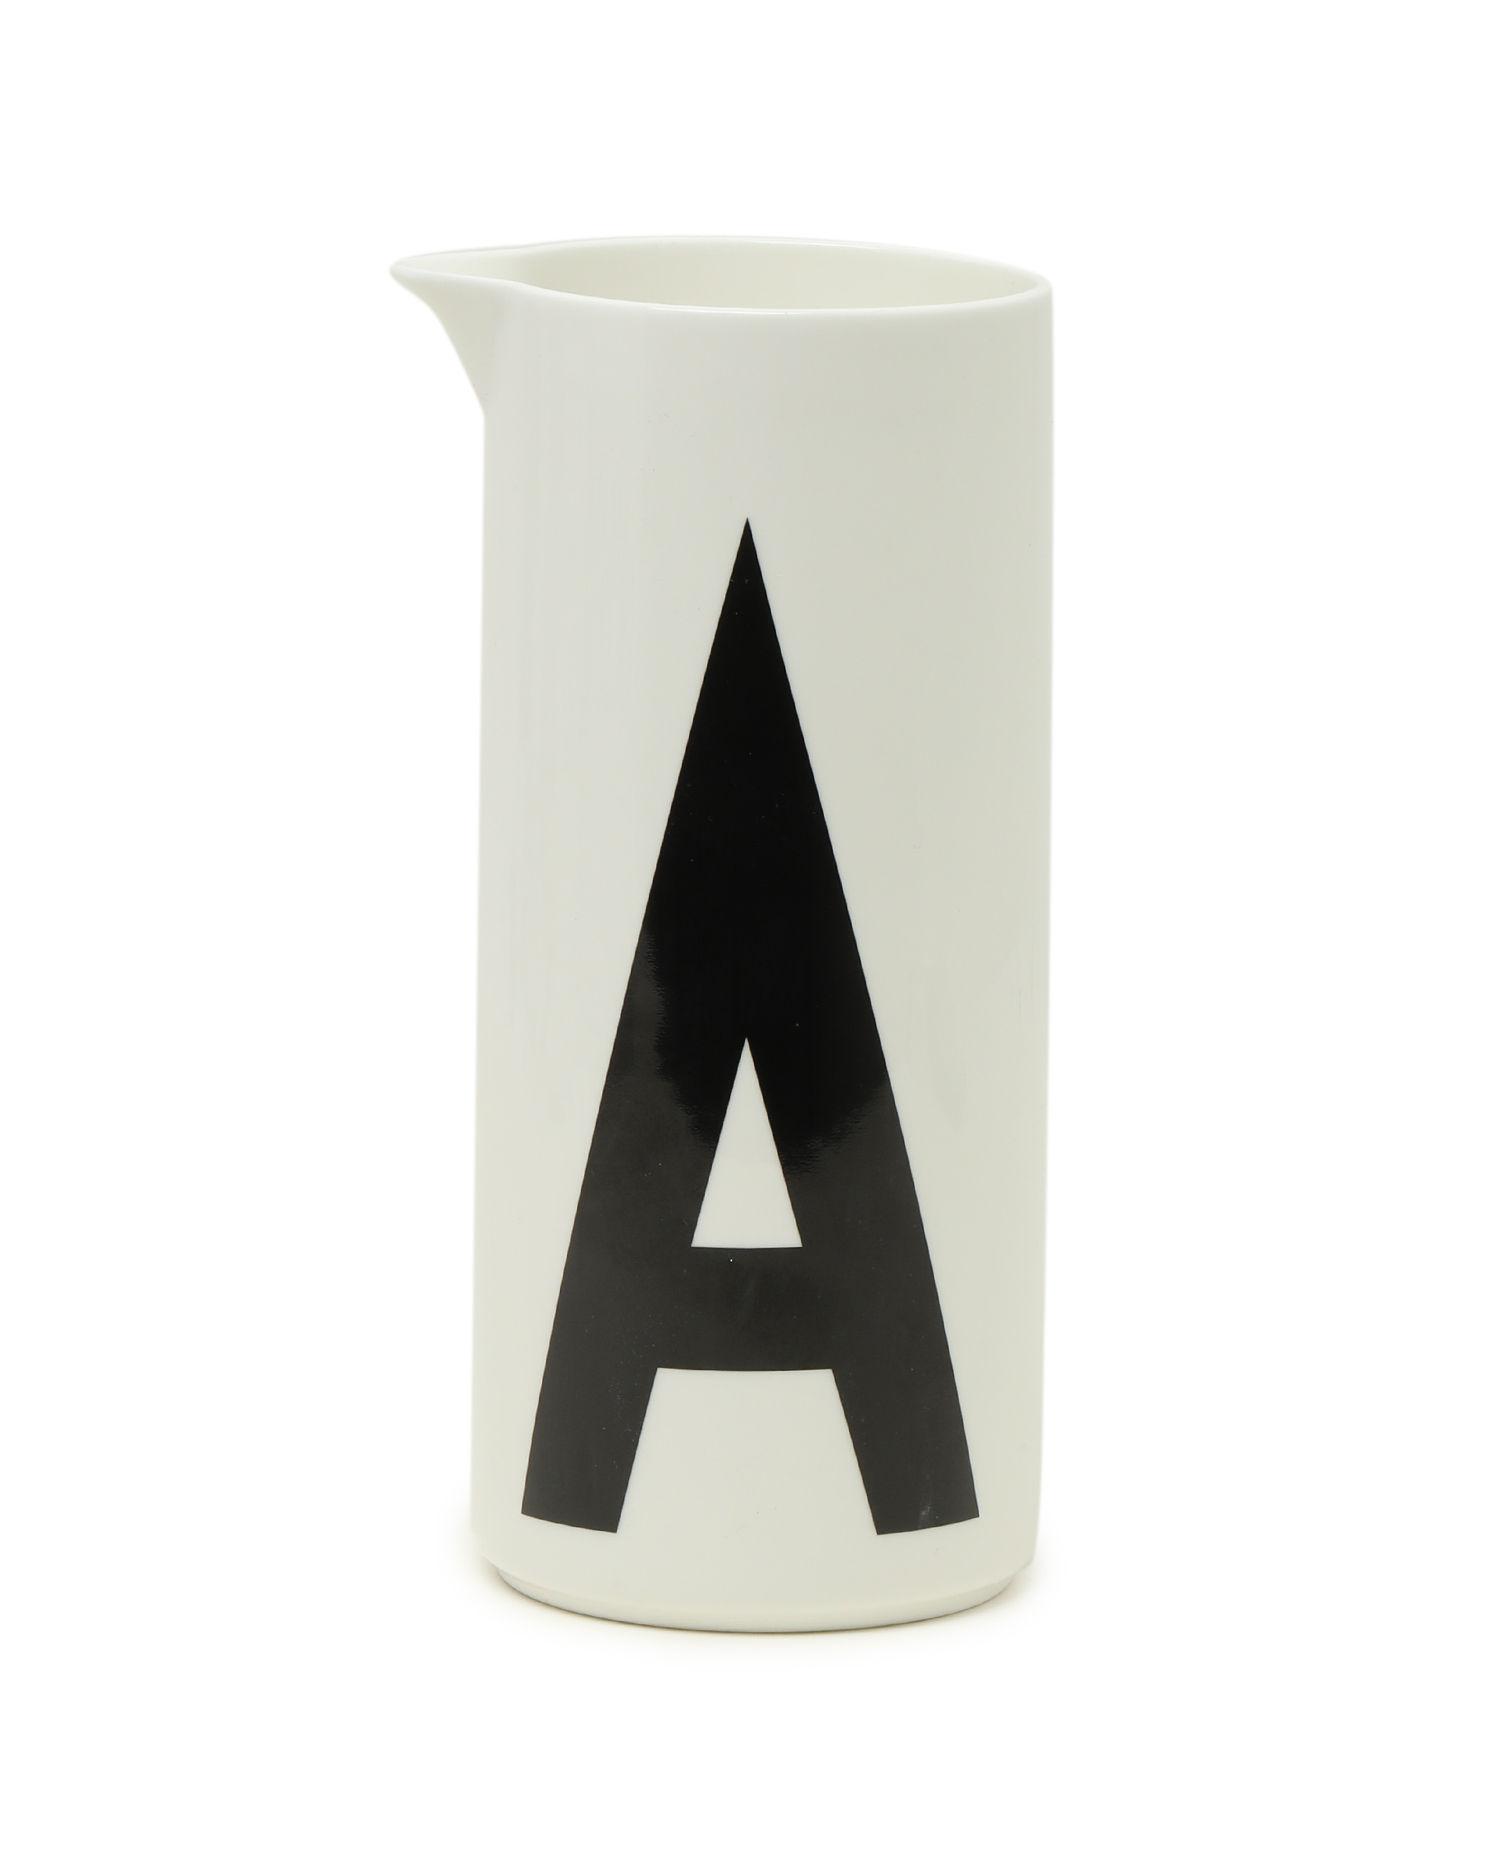 Aqua jug by DESIGN LETTERS